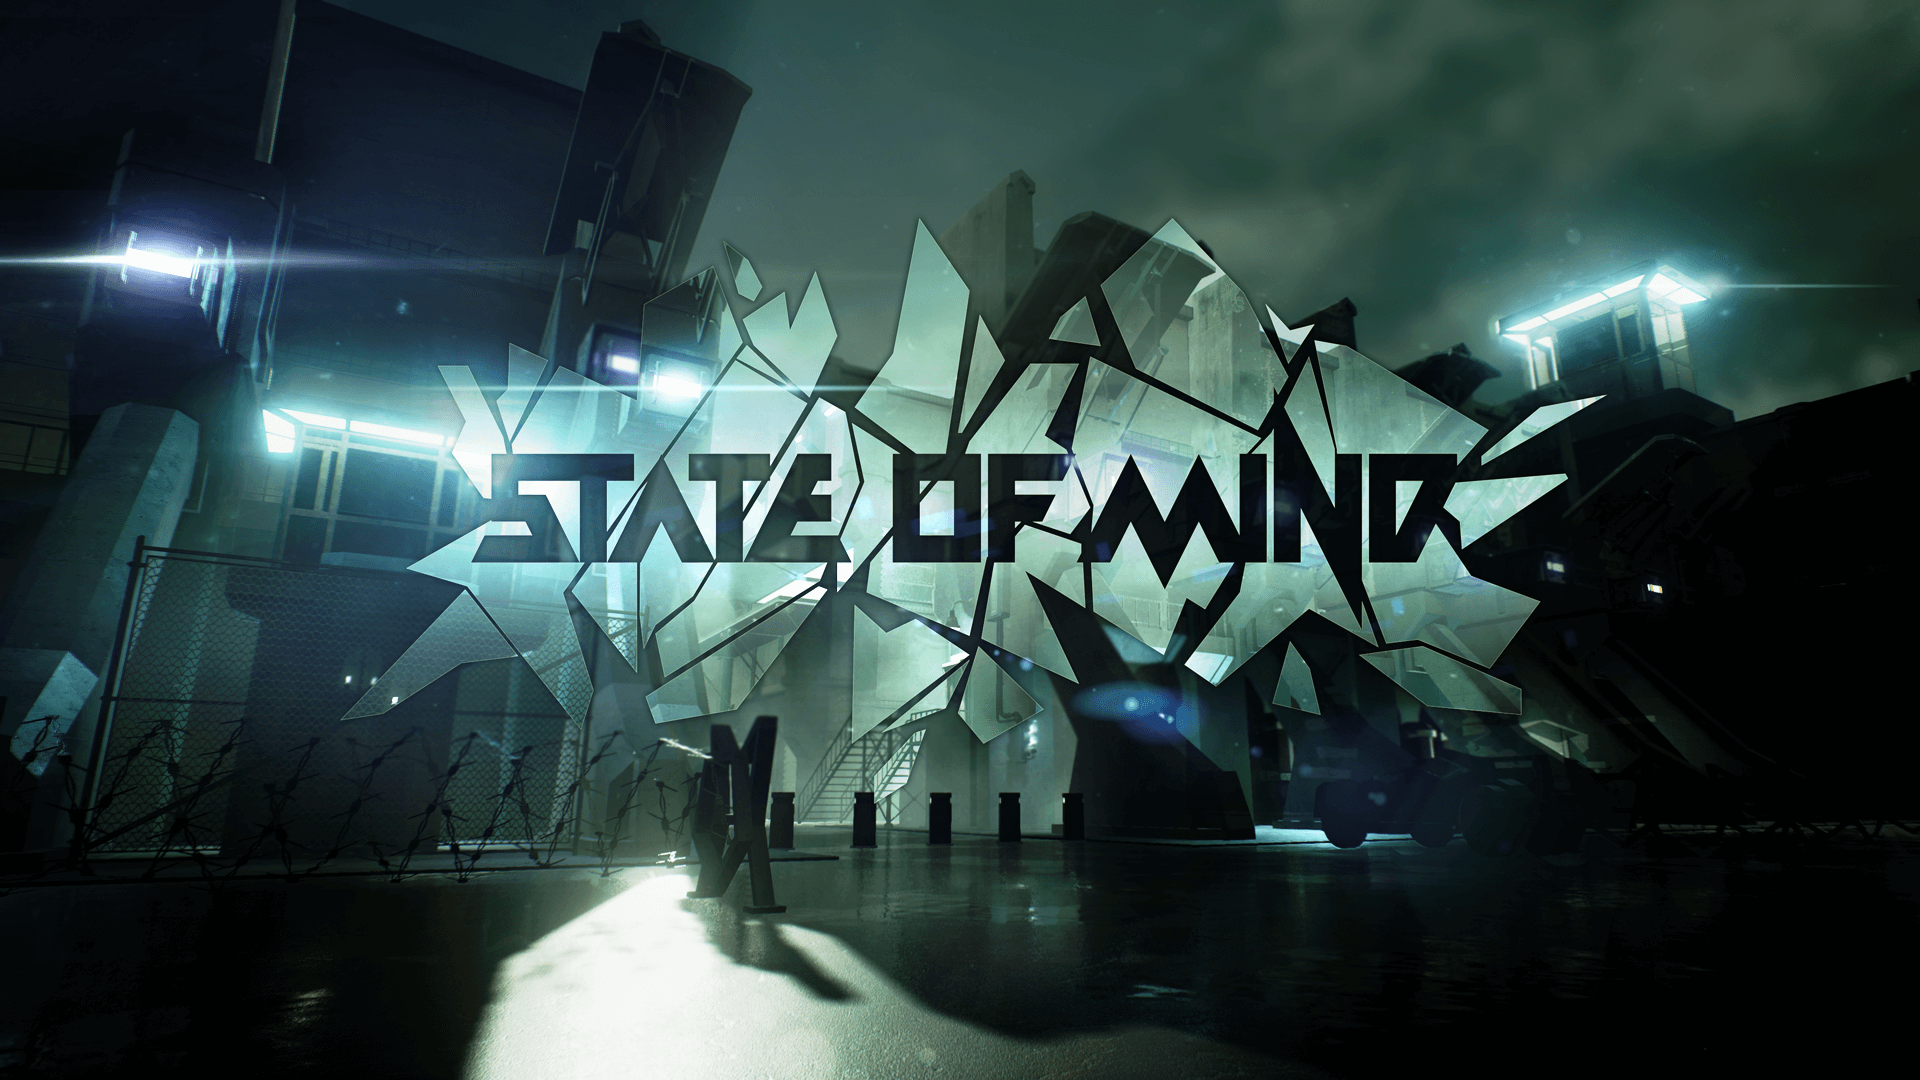 Artwork State of Mind (Bildrechte: Daedalic Entertainment)